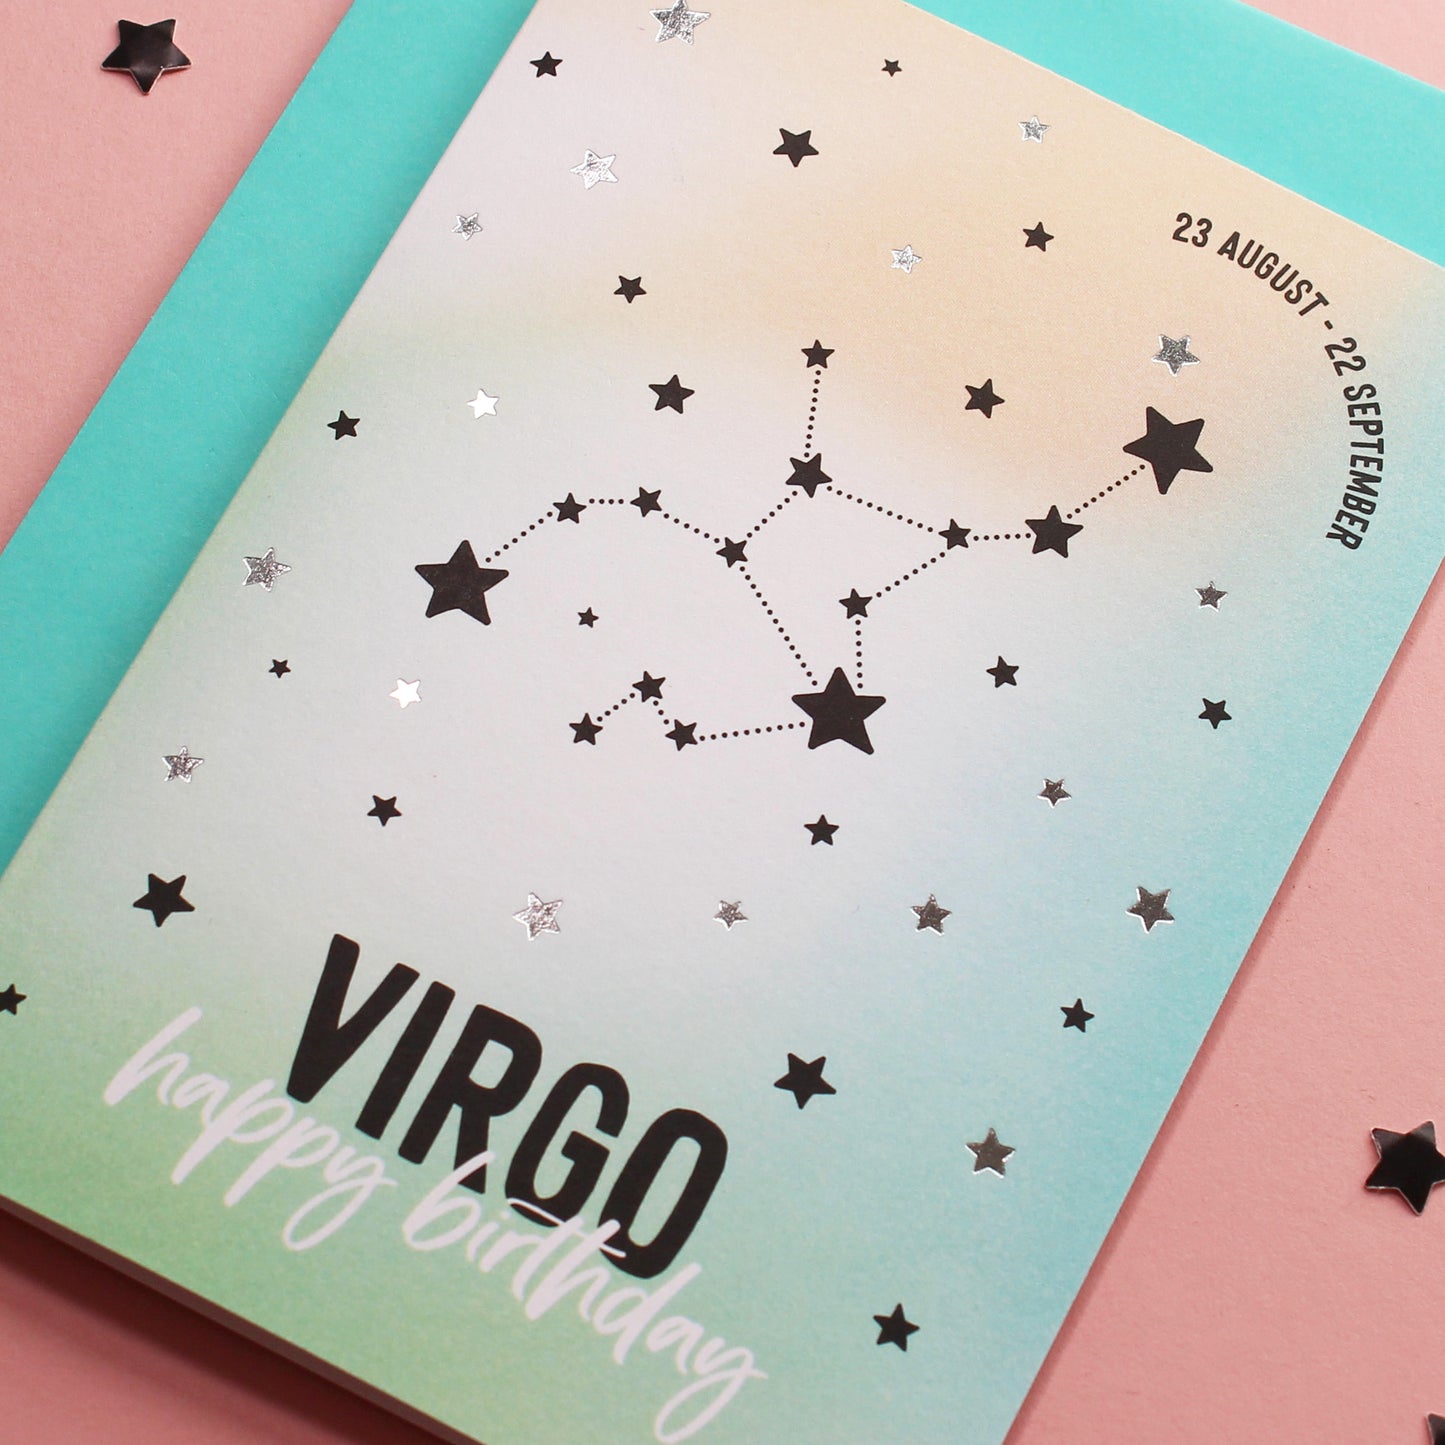 Virgo birthday card